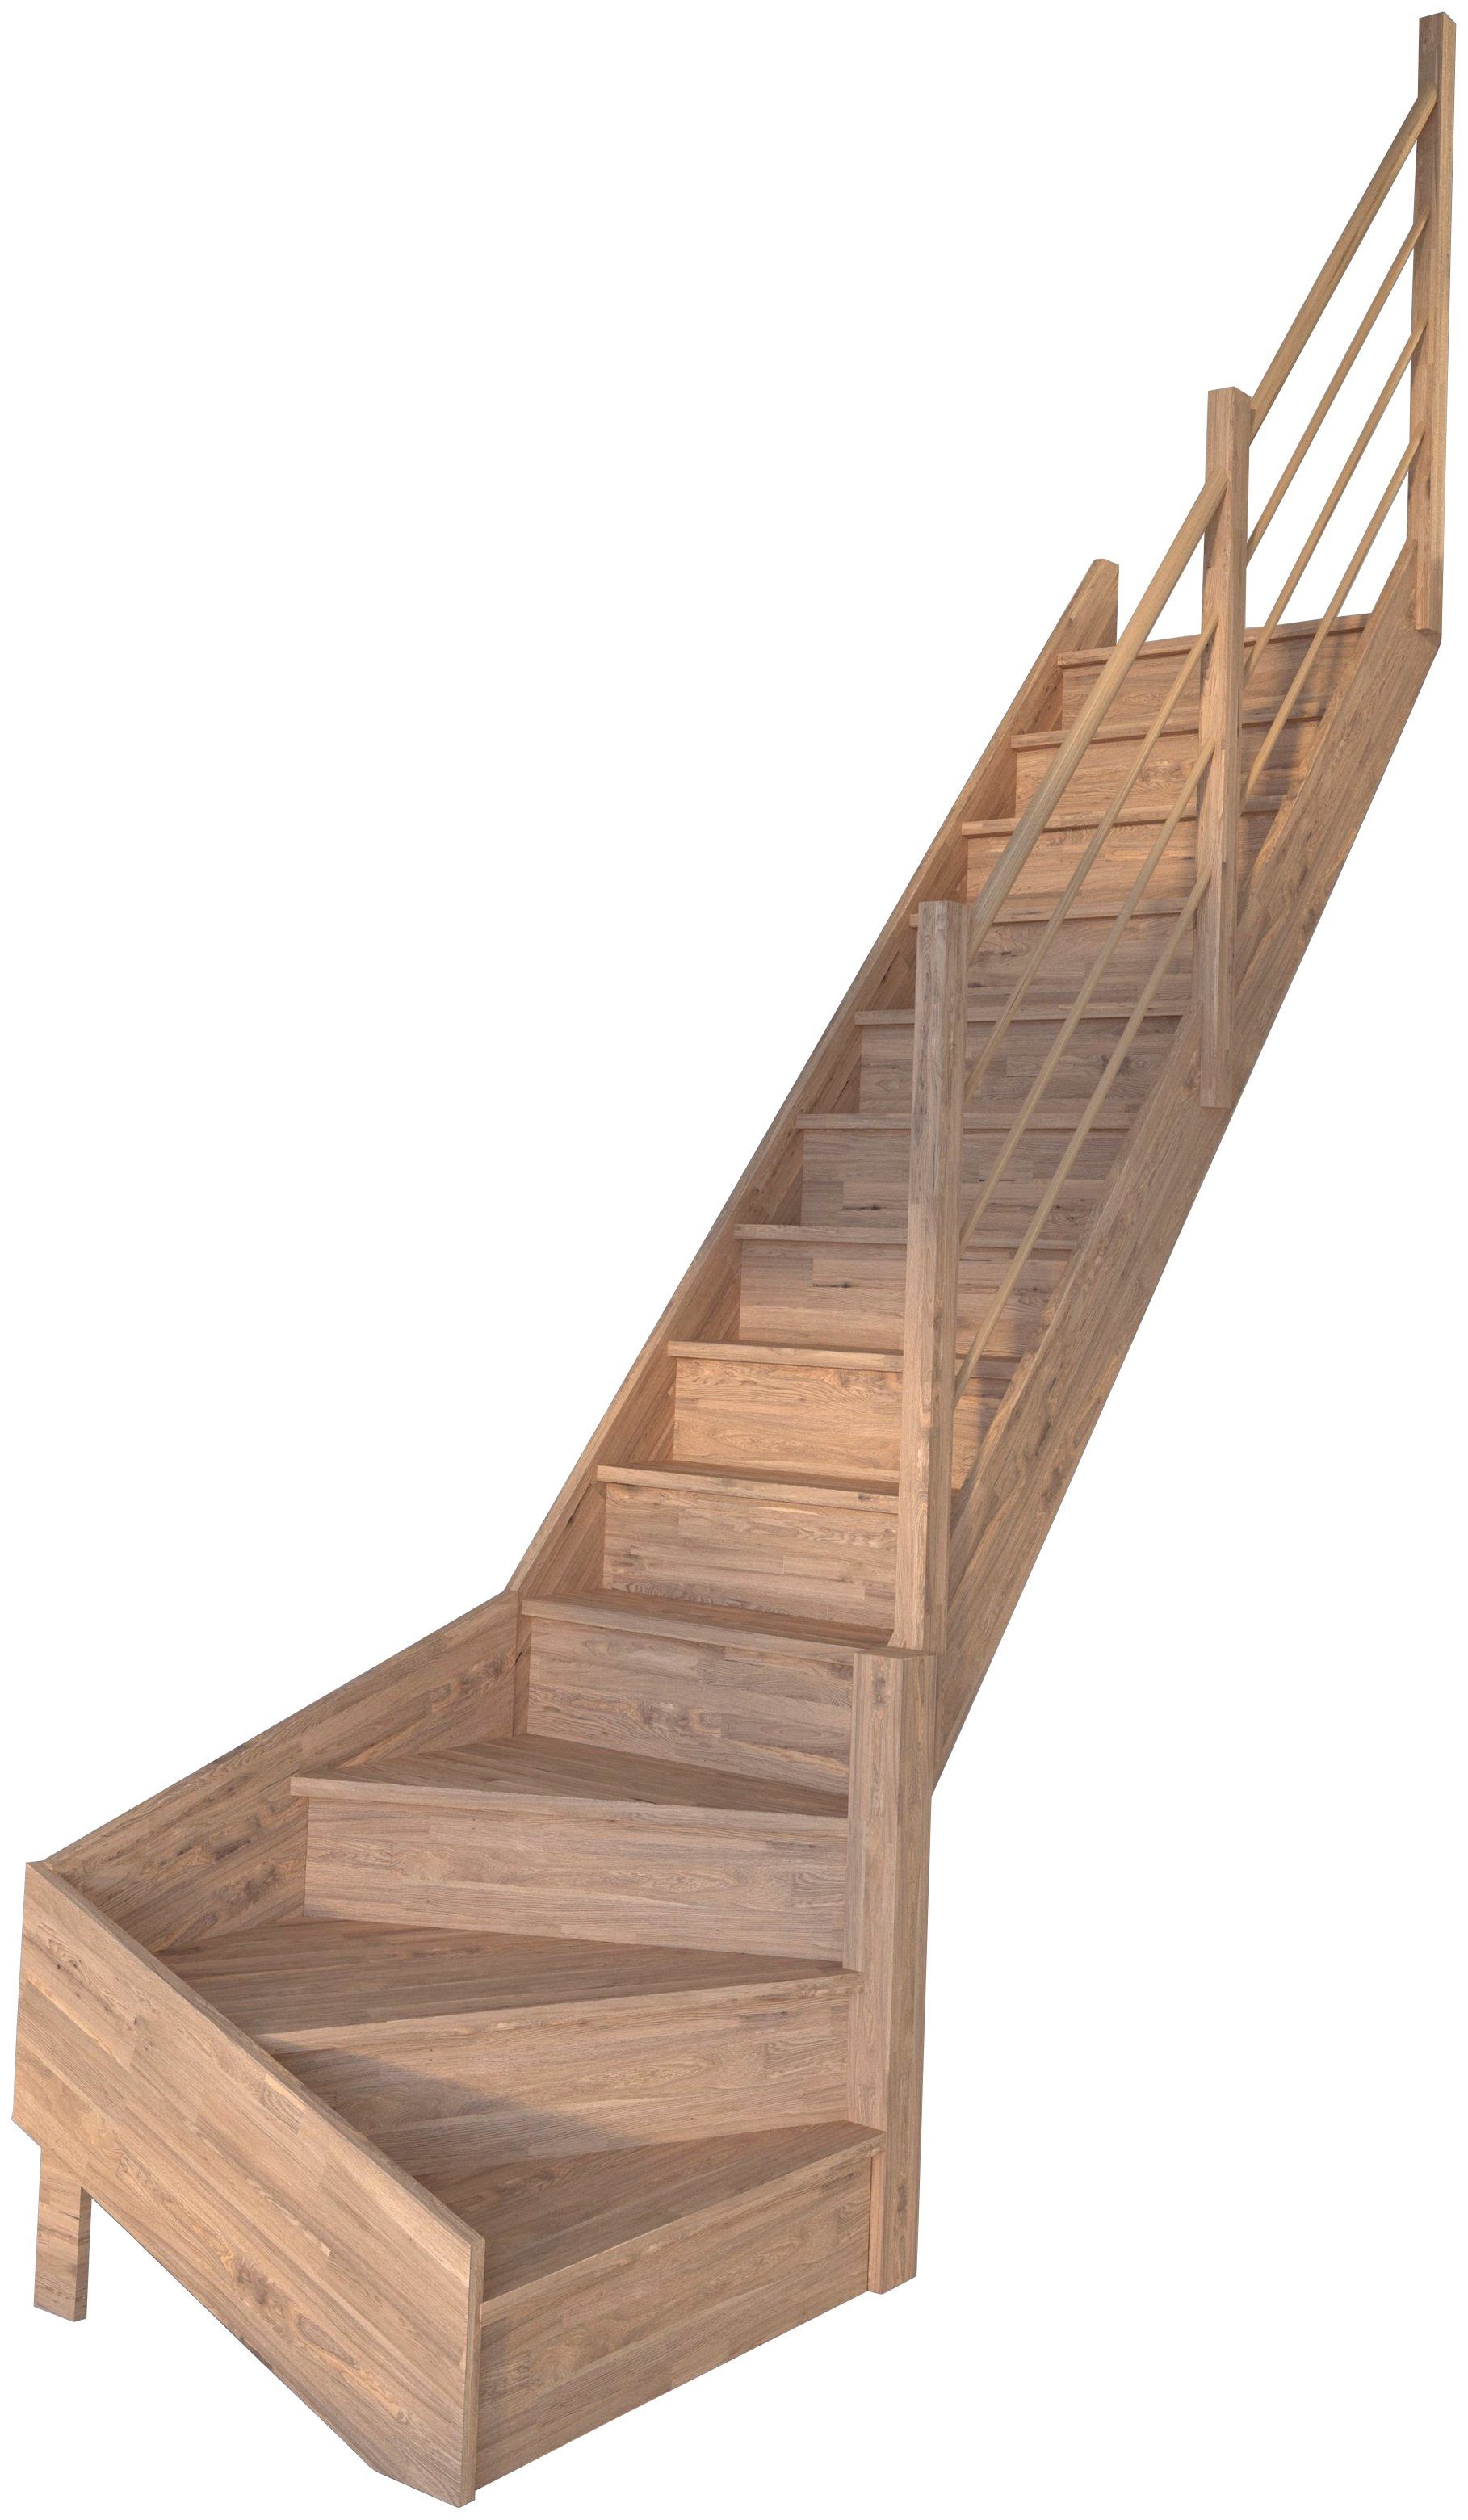 Starwood Raumspartreppe Massivholz Rhodos, Durchgehende Geschosshöhen 300 für cm, Geländer, bis Wangenteile geschlossen, Rechts, Stufen gewendelt Holz-Holz Design